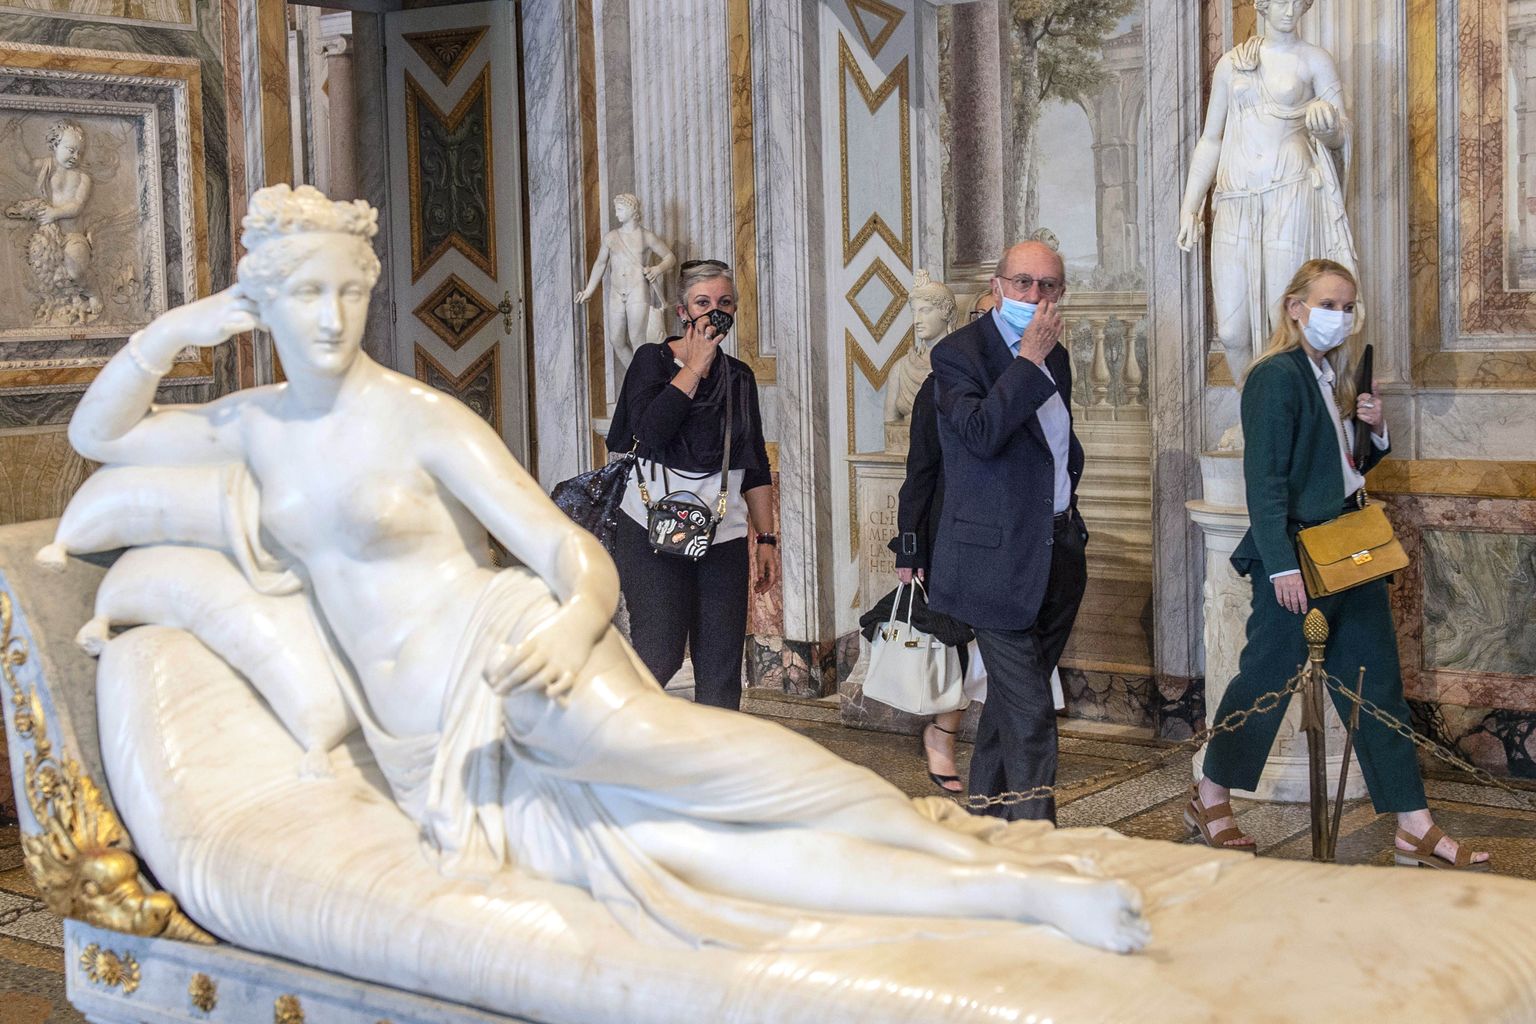 Itaalia skulptori Antonio Canova skulptuur Pauline Bonaparte'ist Venus Victrix'ina. Kuju asub Rooma Borghese galeriis.